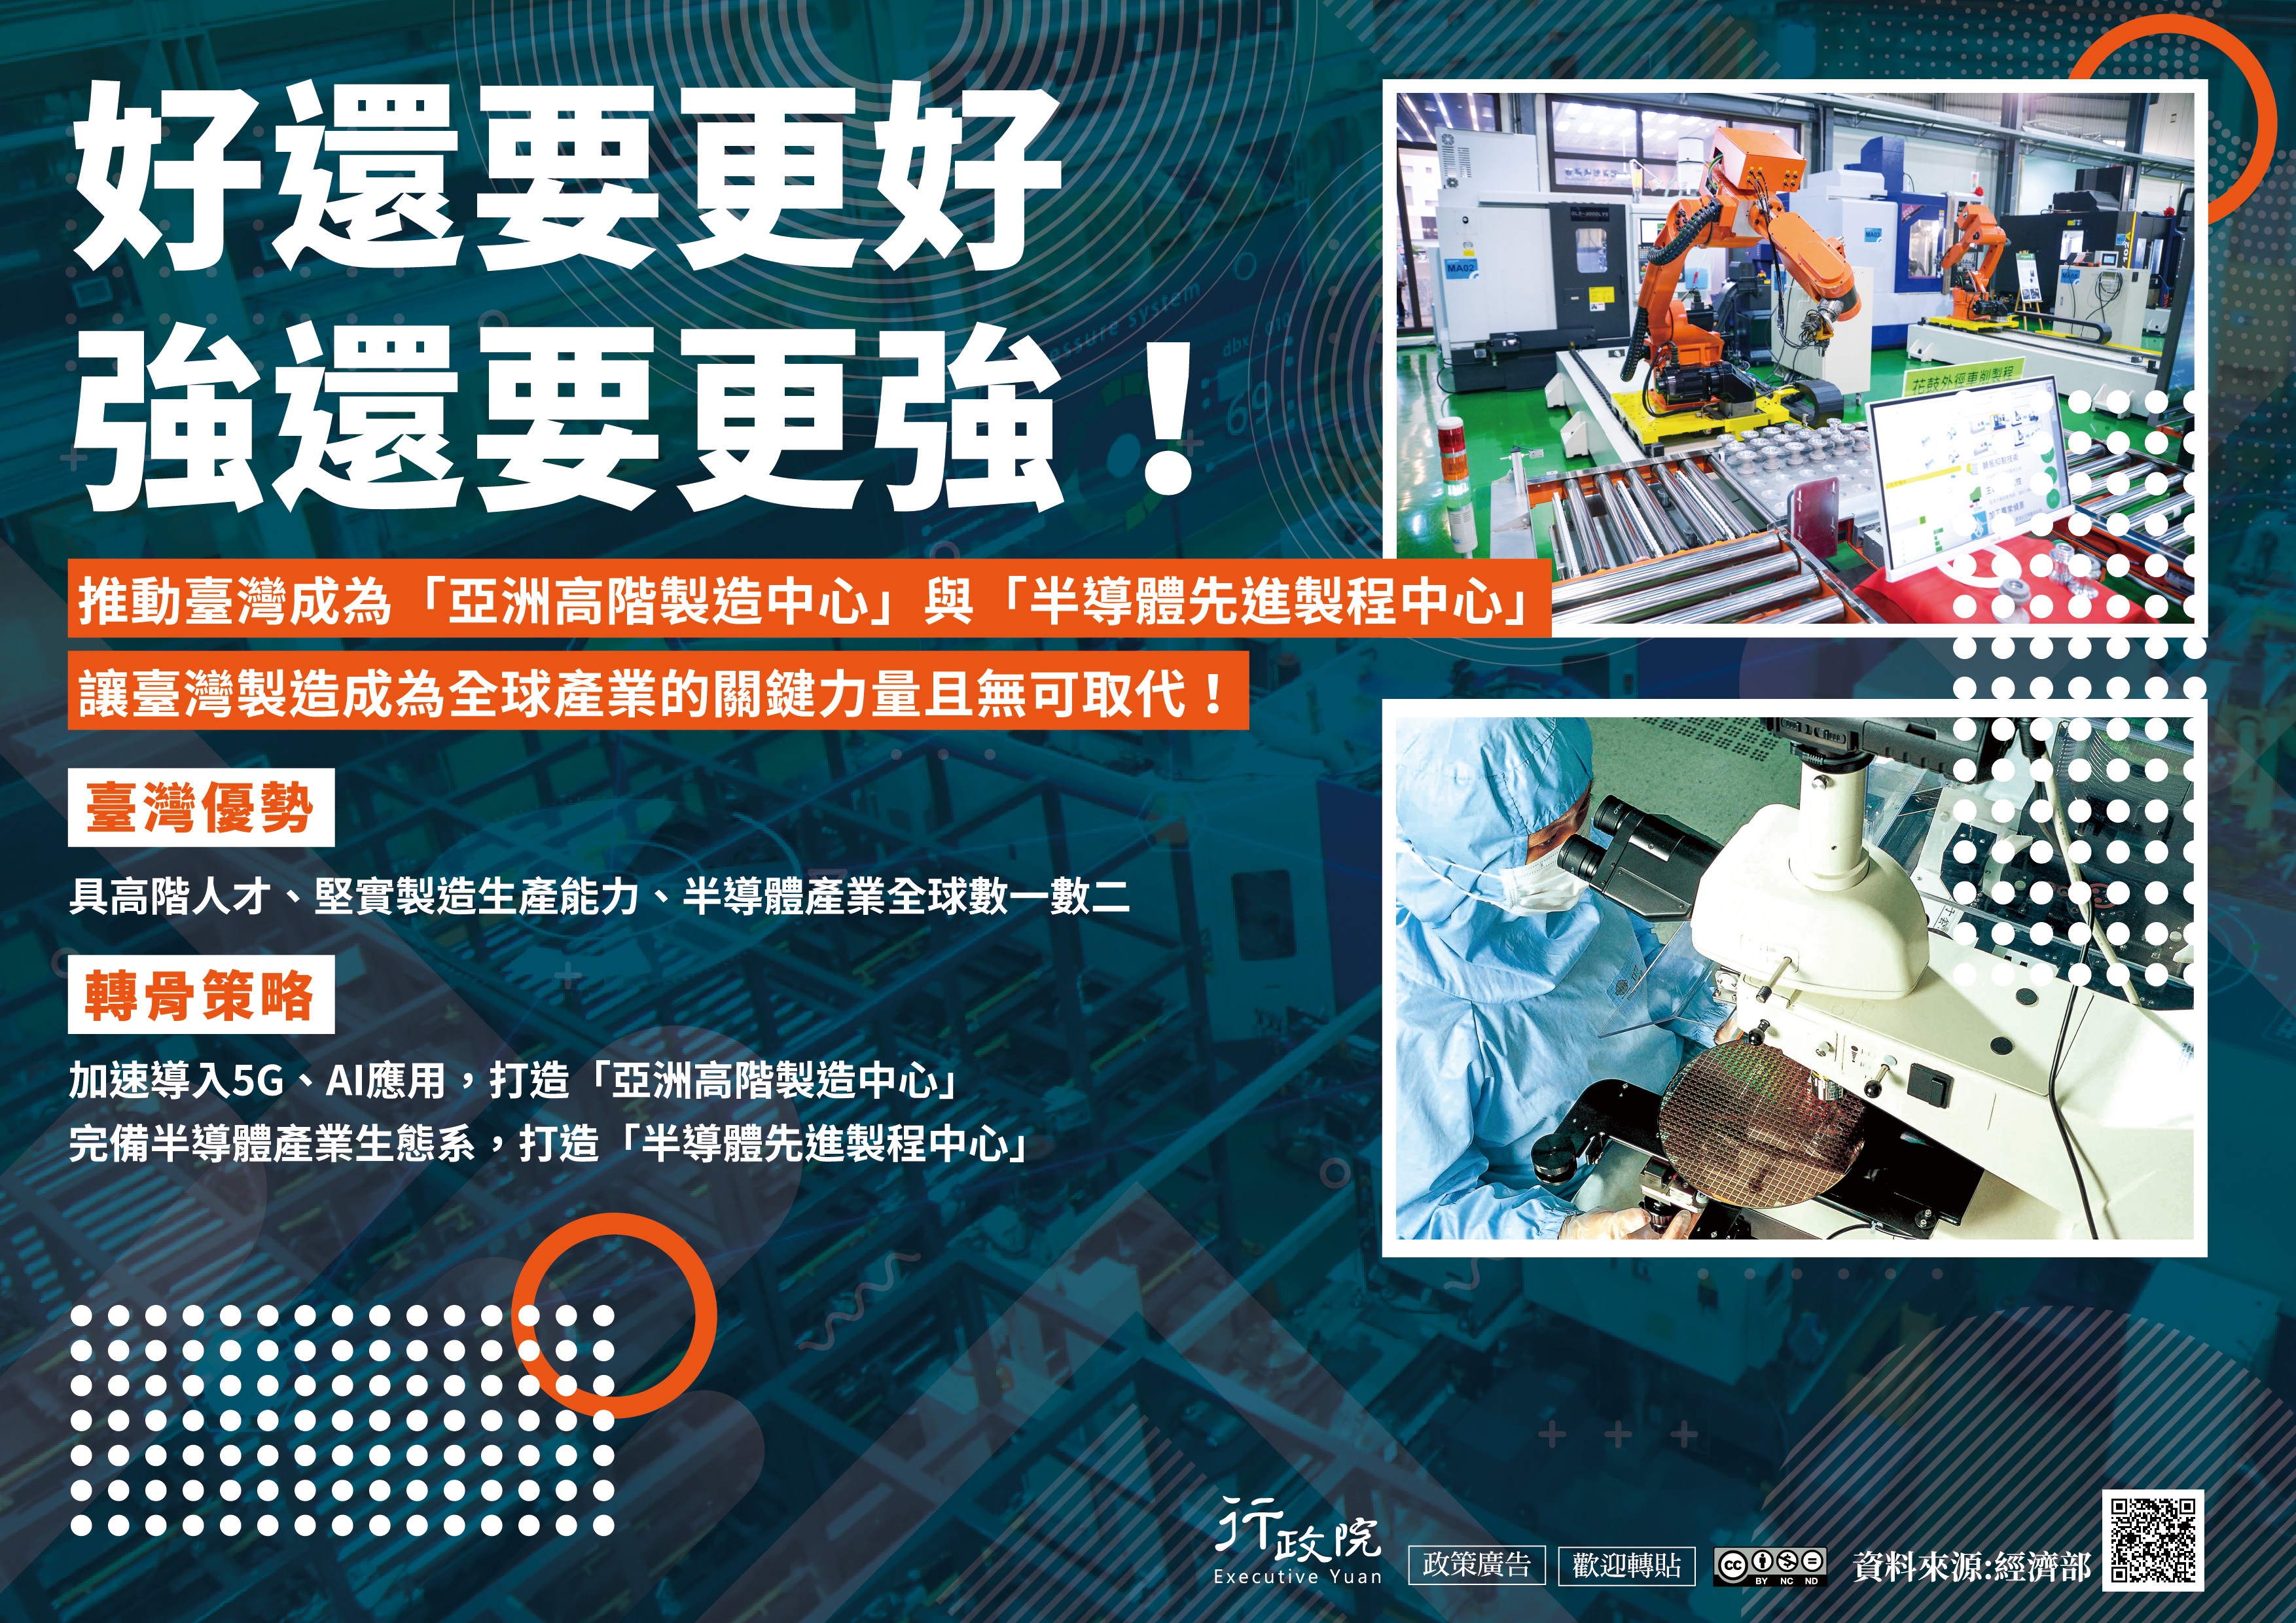 推動臺灣成為『亞洲高階製造中心』與『半導體先進製程中心』